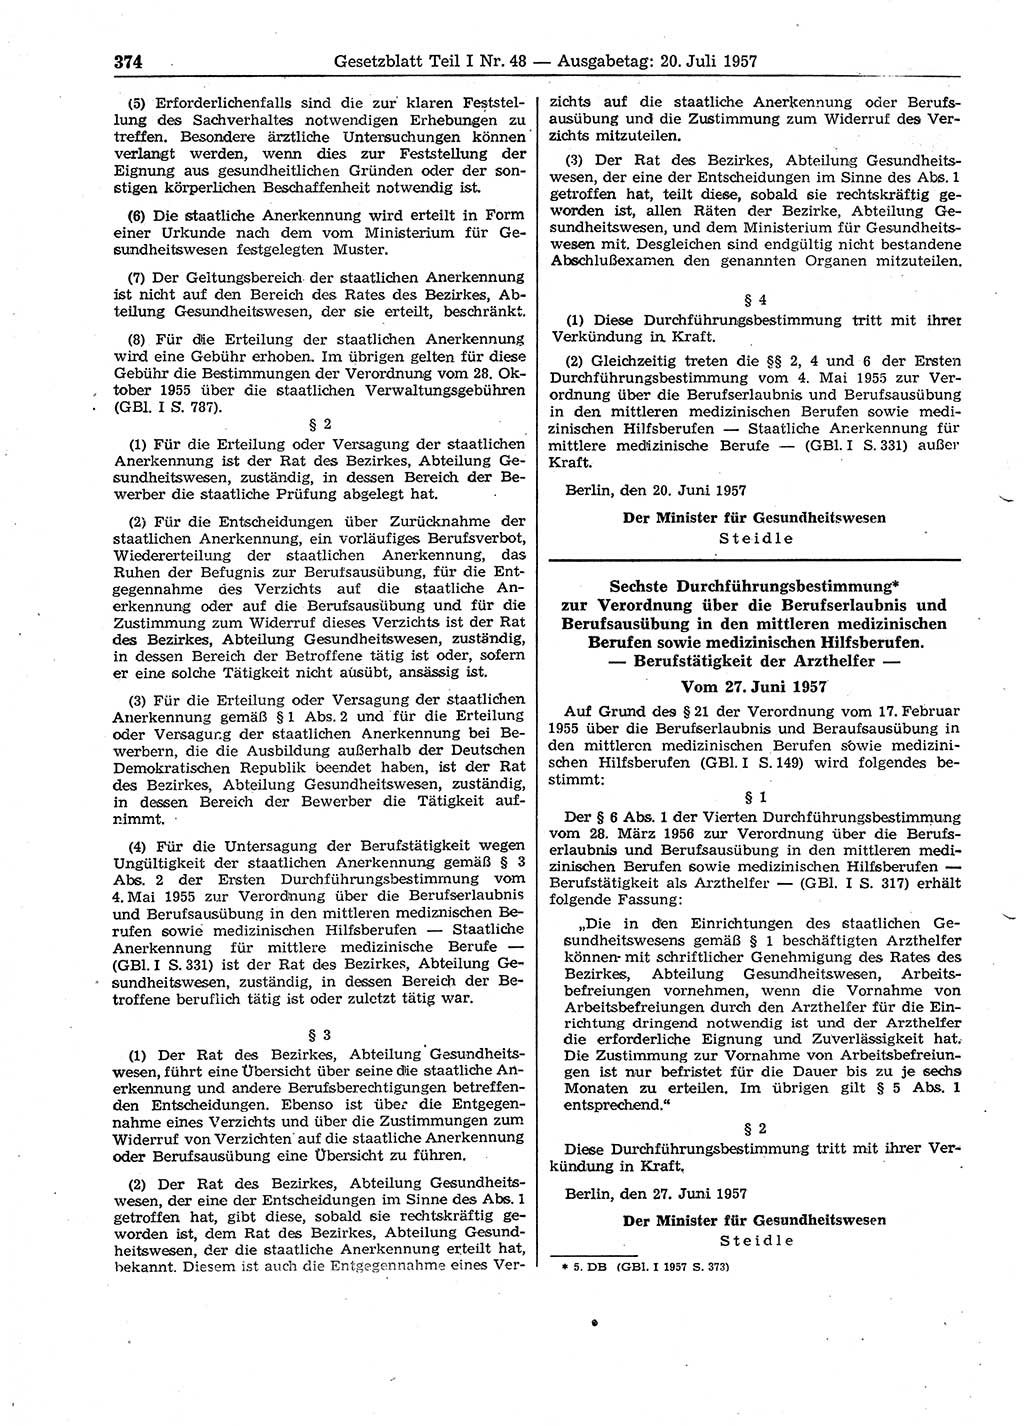 Gesetzblatt (GBl.) der Deutschen Demokratischen Republik (DDR) Teil Ⅰ 1957, Seite 374 (GBl. DDR Ⅰ 1957, S. 374)